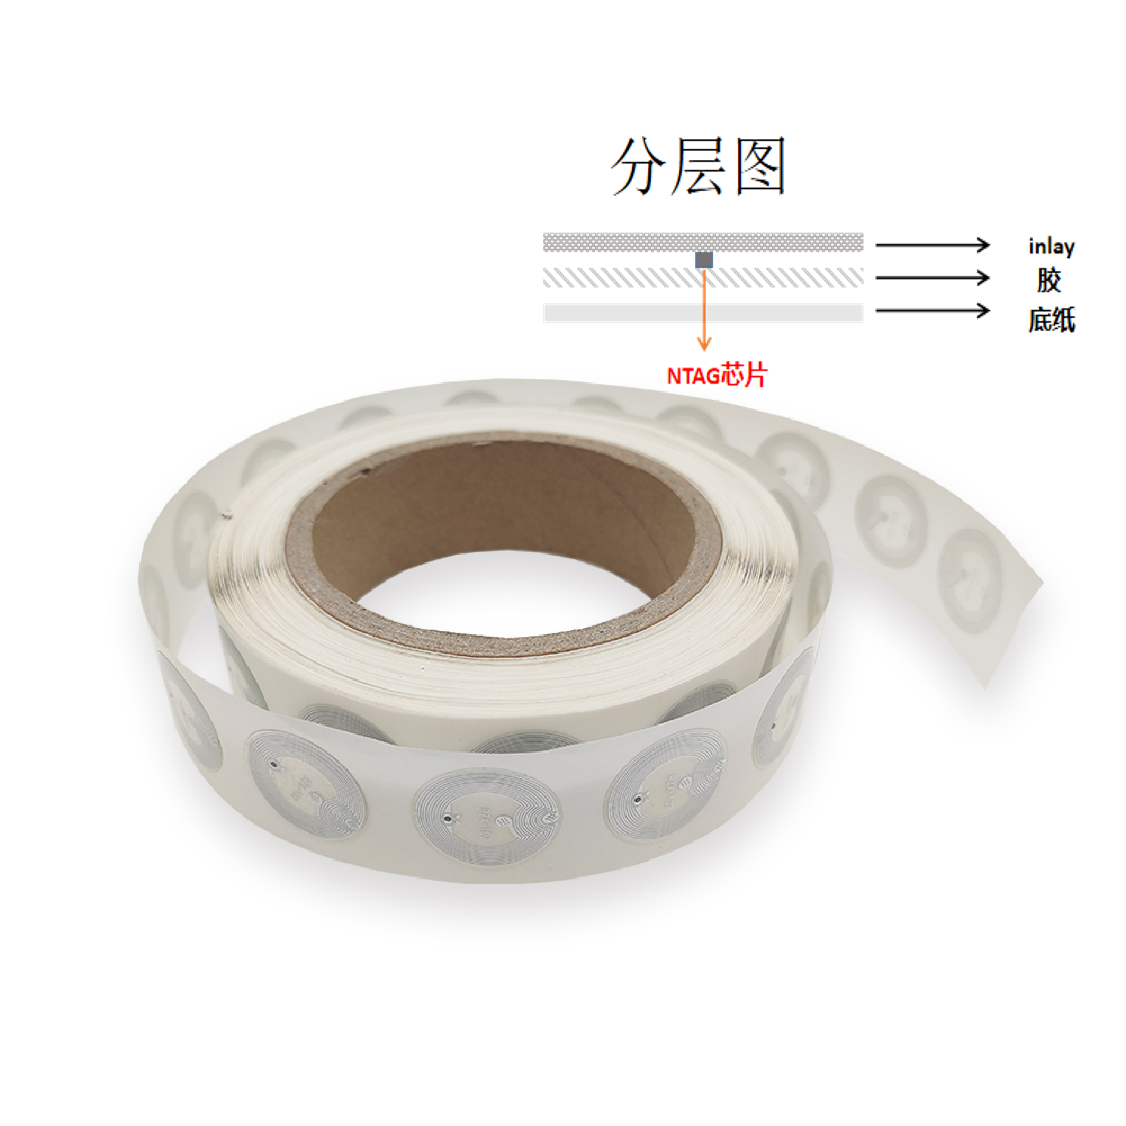 NFC wet inlay wholesale diameter 25mm